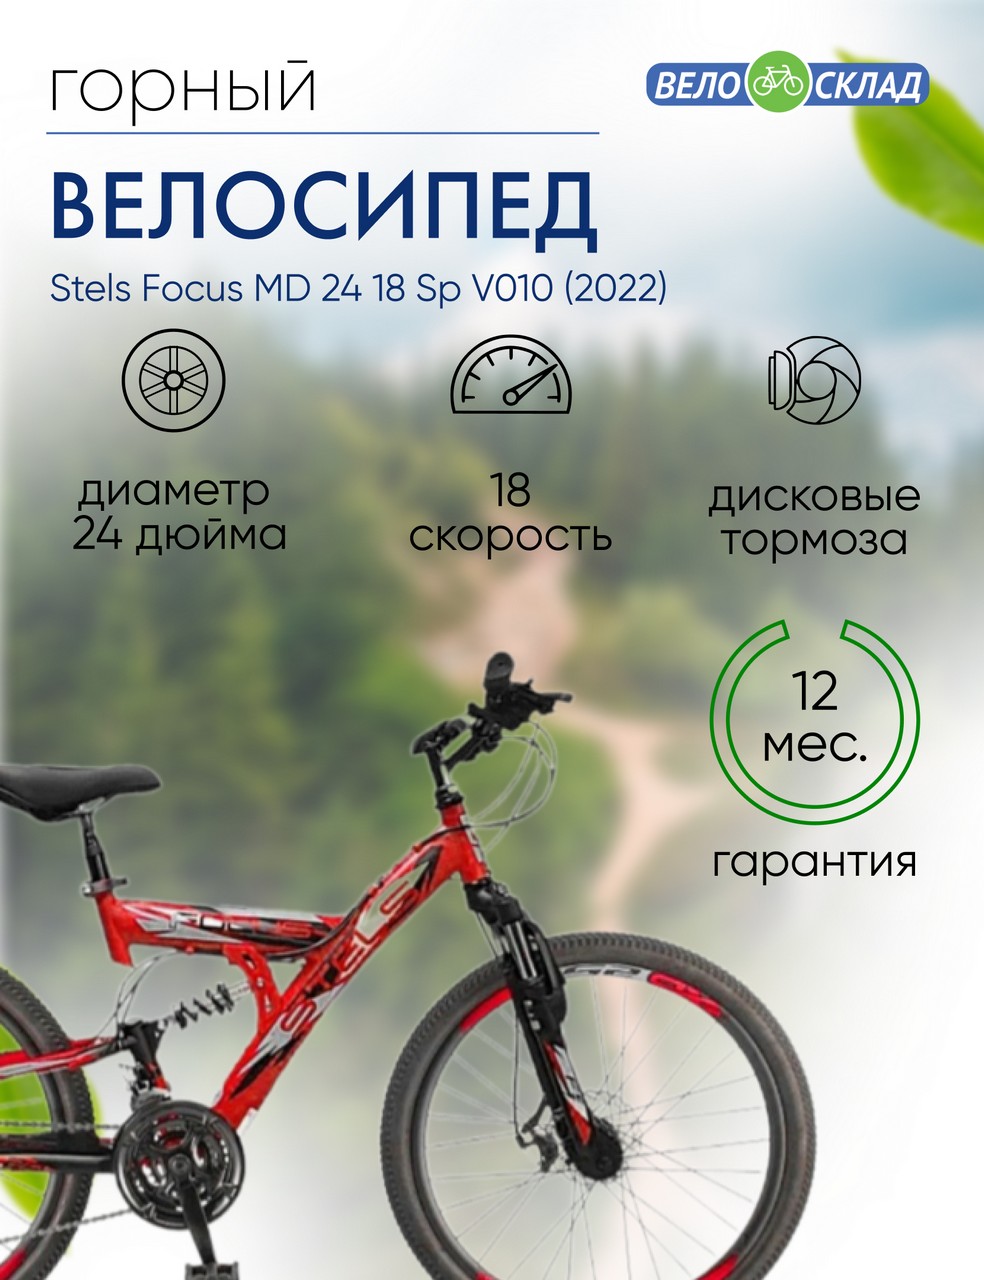 Подростковый велосипед Stels Focus MD 24 18 Sp V010, год 2022, цвет Красный-Черный, ростовка 16